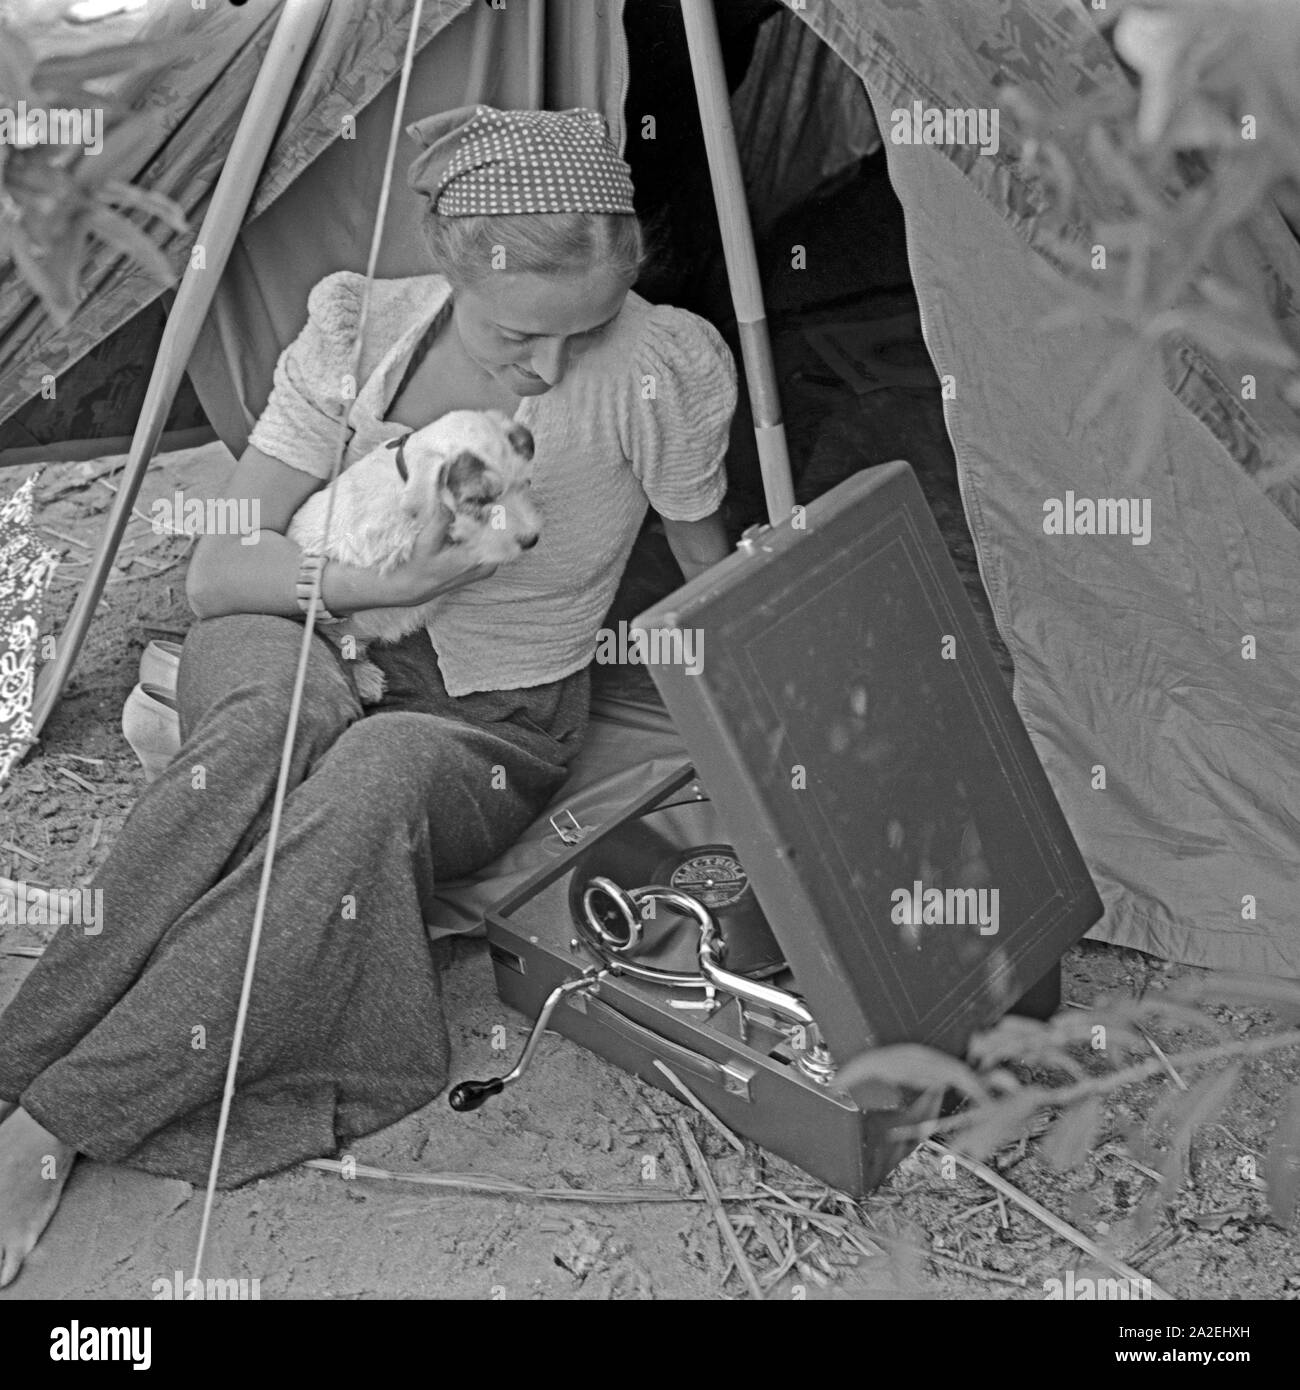 Werbefoto für Klepper Zelt: Getreu dem Werbeslogan Fahre fröhlich in die weite Welt, mit Klepper-Mantel,-Boot-und-Zelt sitzt eine junge Frau mit einem Welpen vor einem Zelt, Deutschland 1930er Jahre. Werbung für ein Klepper Zelt: Eine junge Frau sitzt mit einem Welpen vor einem Zelt, Deutschland 1930. Stockfoto